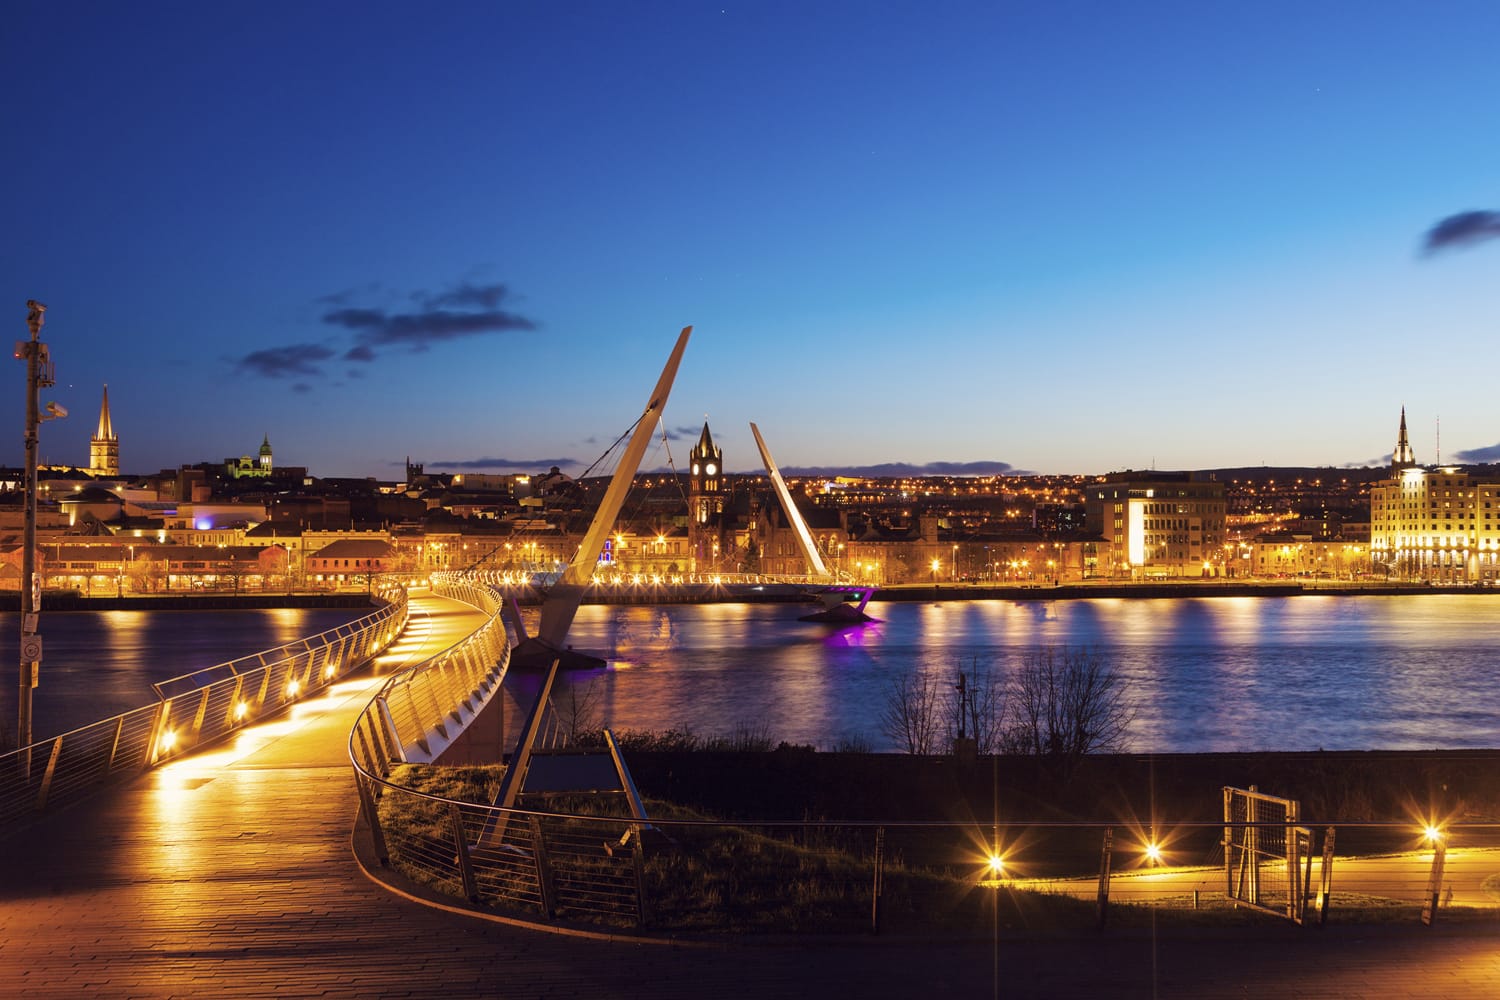 Γέφυρα Ειρήνης στο Ντέρι. Derry, Βόρεια Ιρλανδία, Ηνωμένο Βασίλειο.